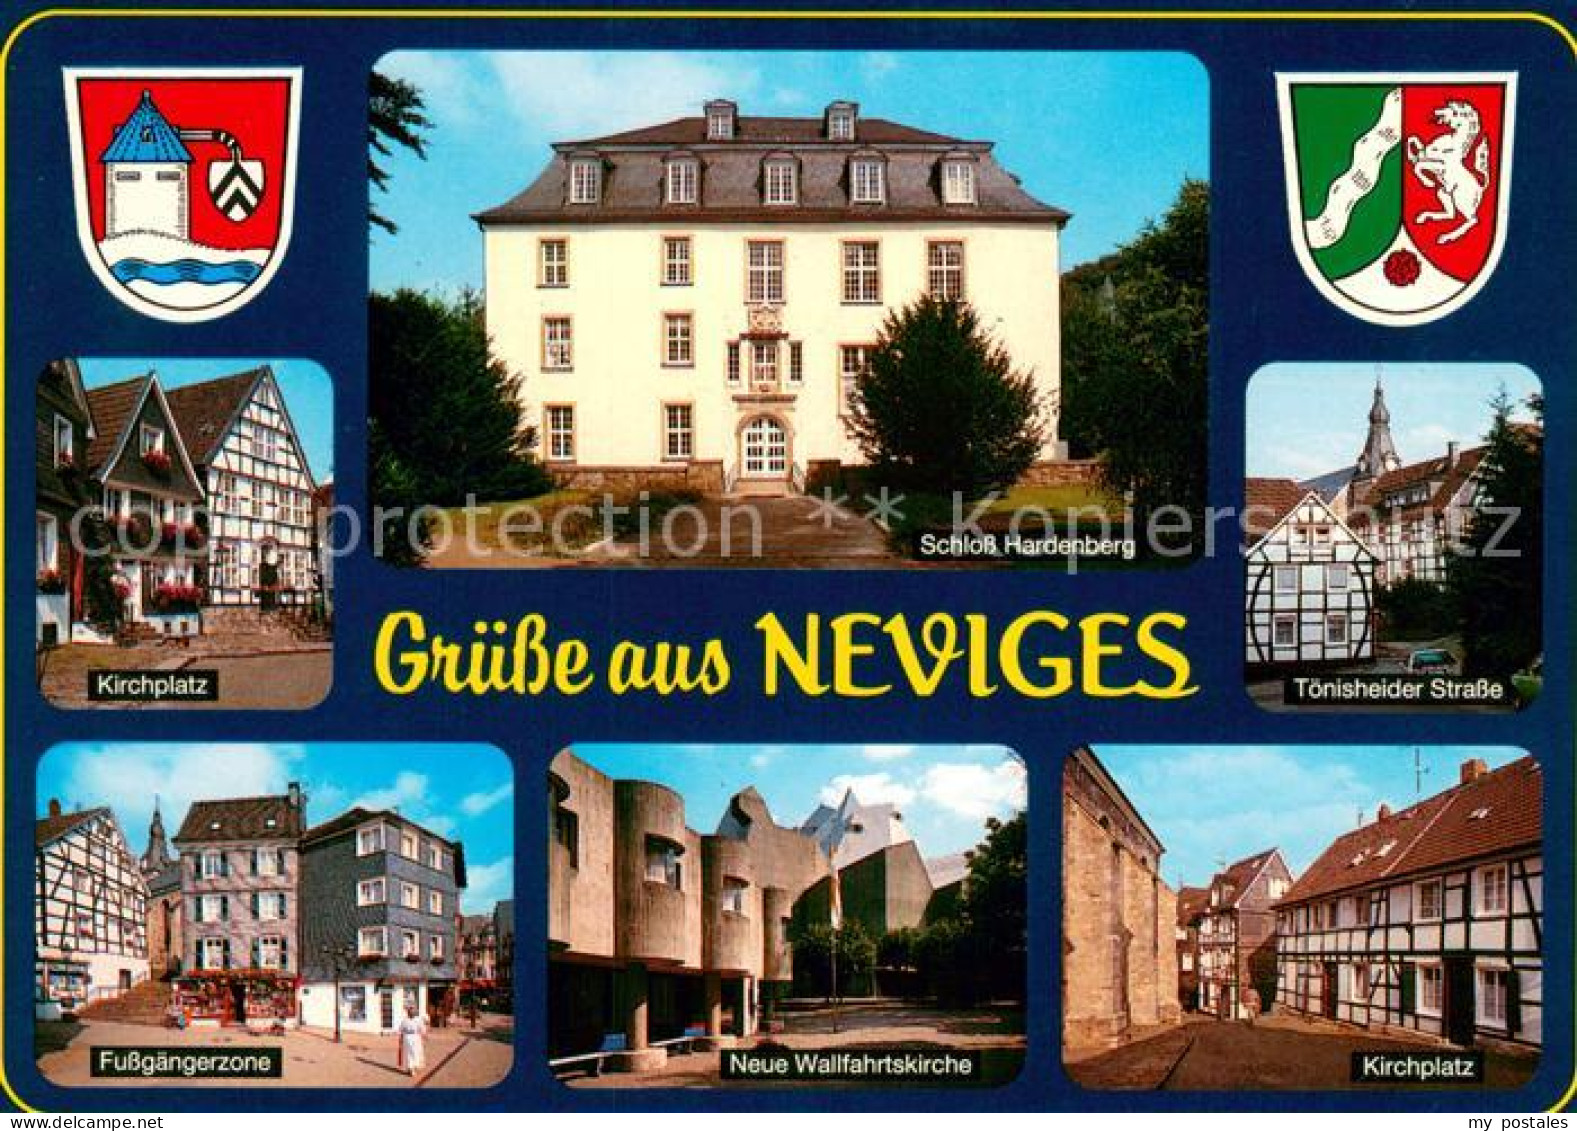 73672518 Neviges Velbert Kirchplatz Schloss Hardenberg Toenisheider Strasse Fuss - Velbert